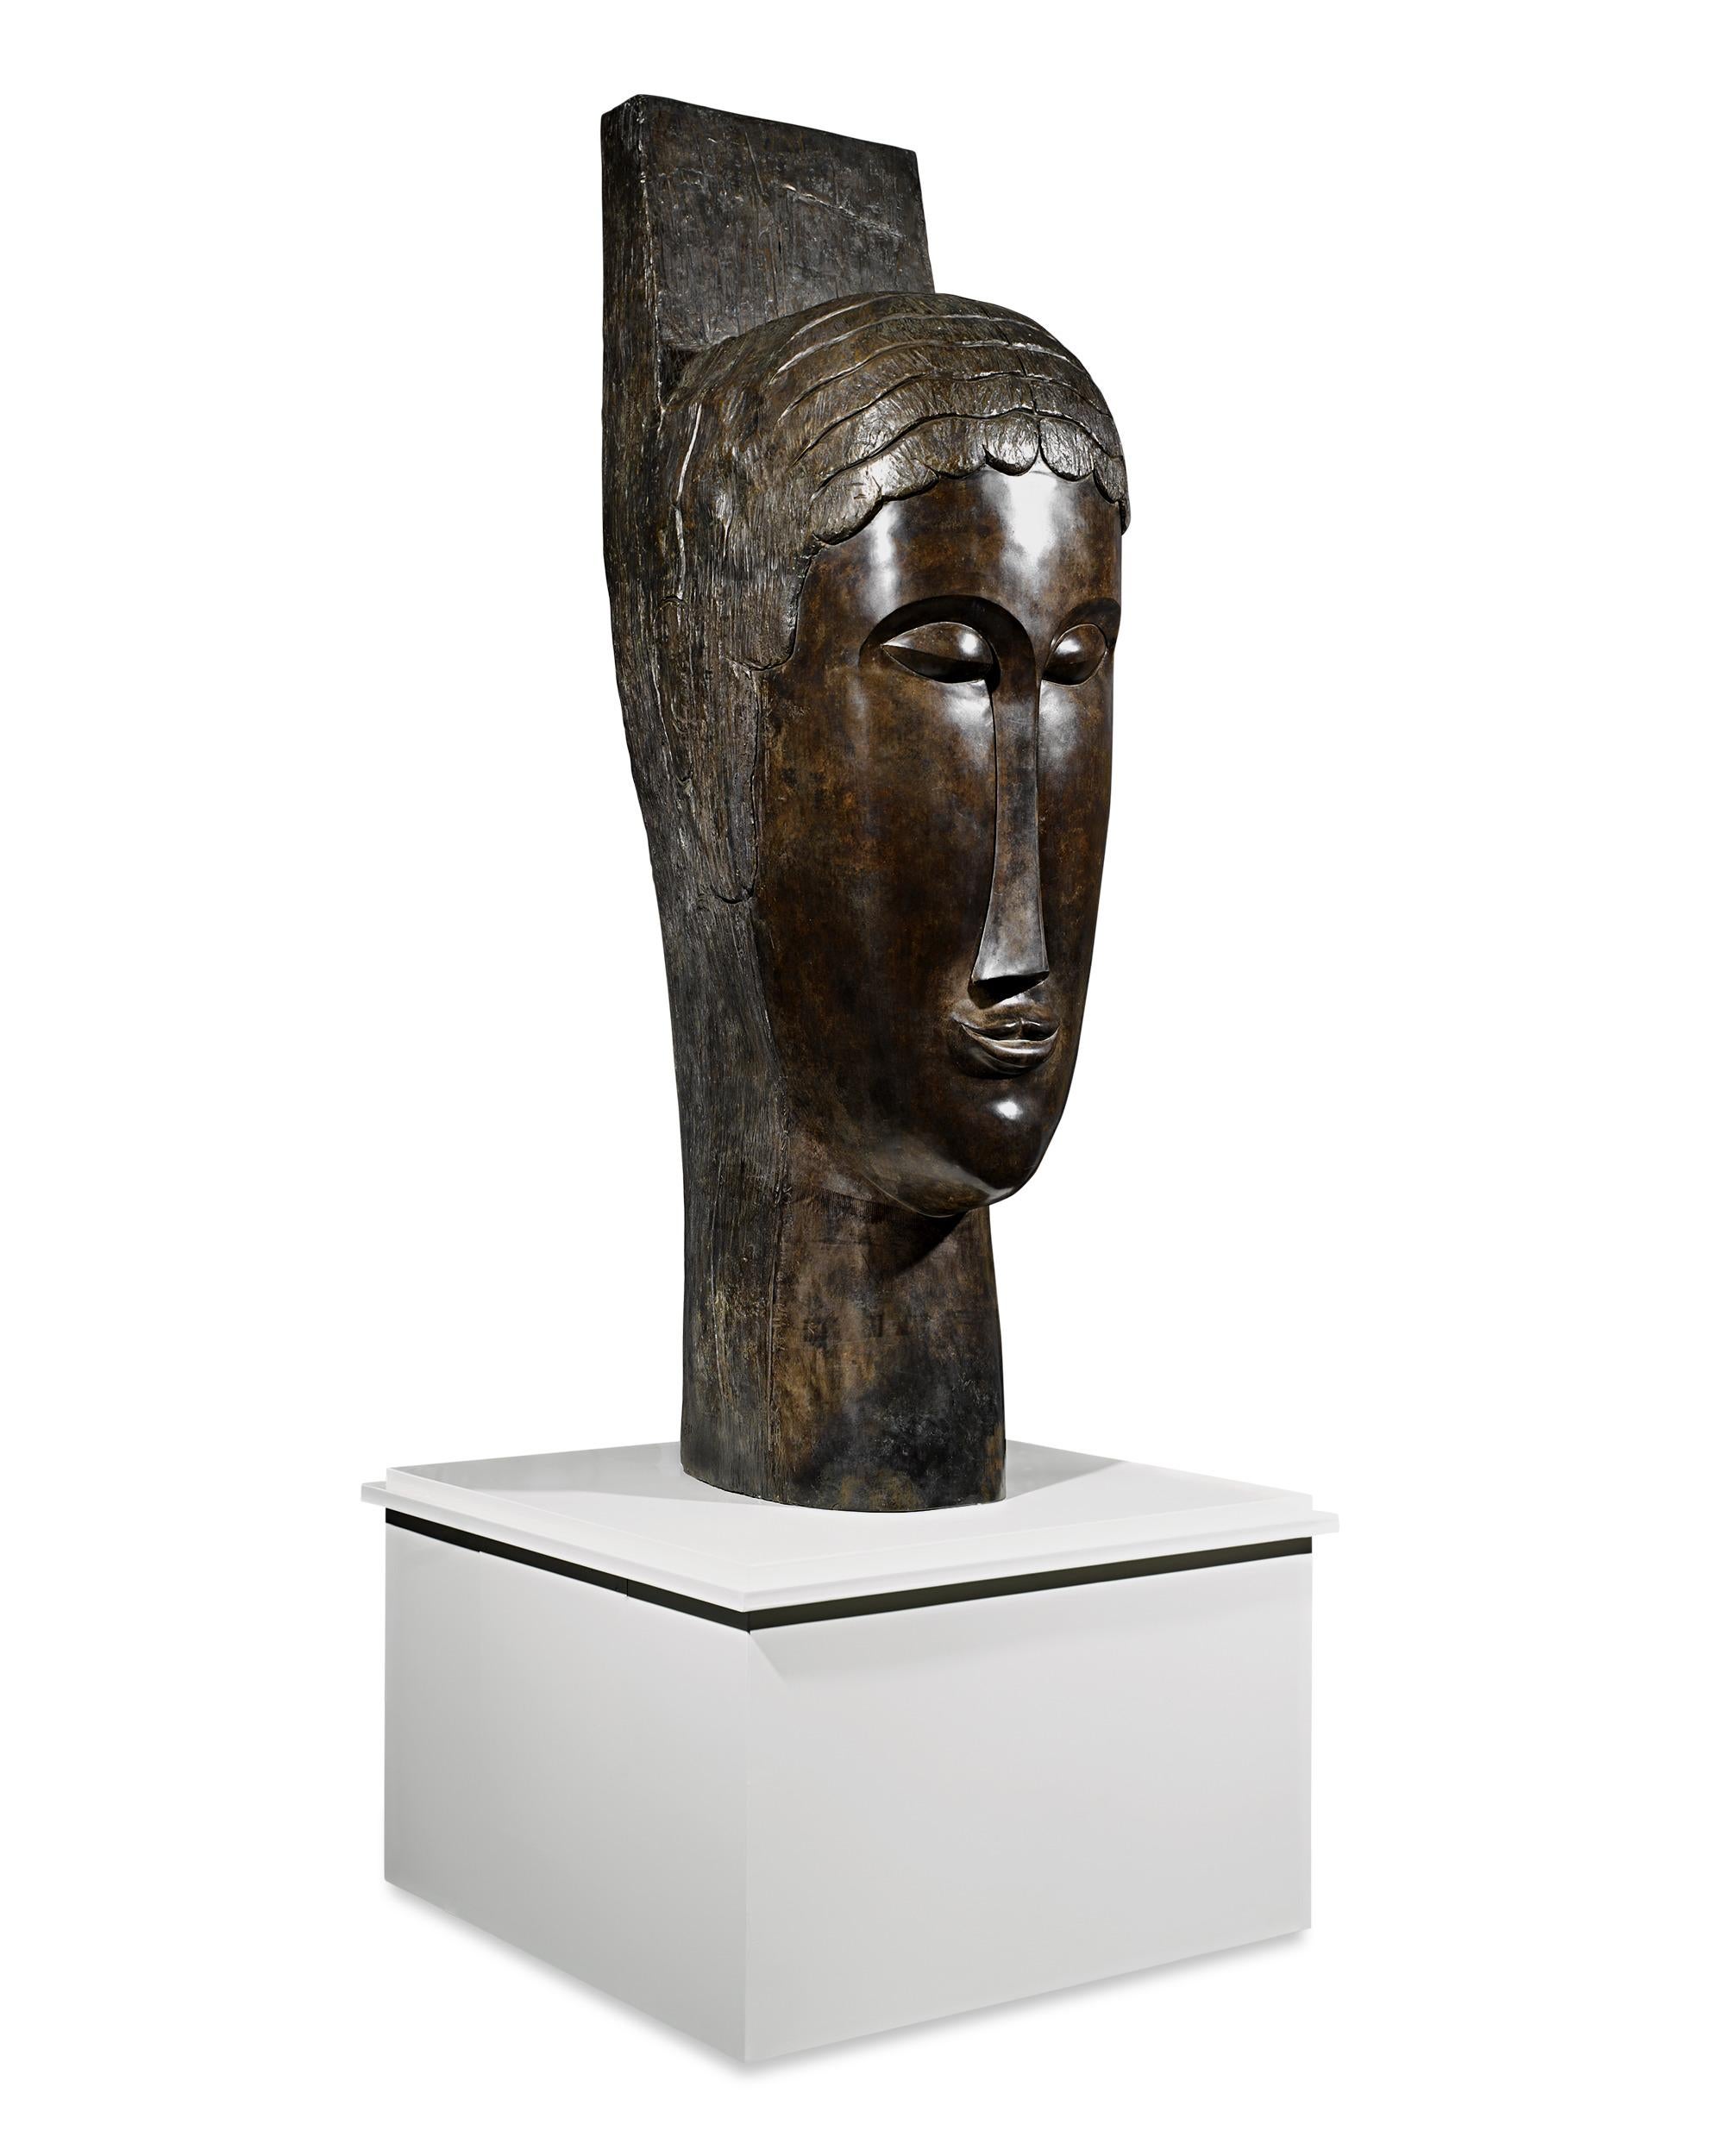 Tête de cariatide Head of Caryatid - Sculpture by Amedeo Modigliani